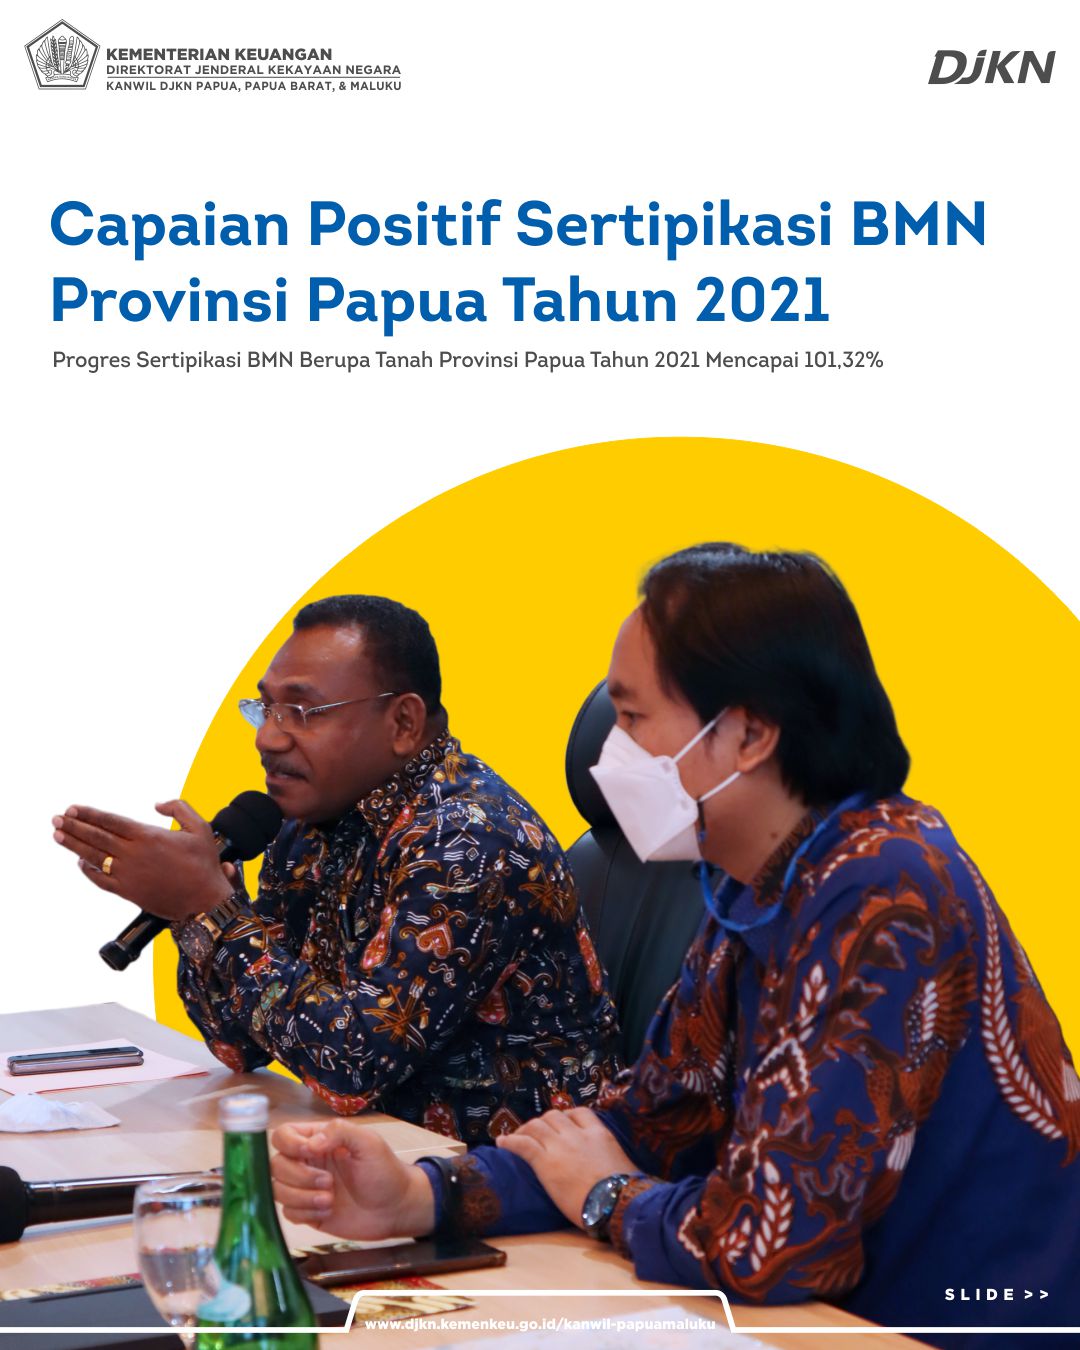 Sertipikasi BMN Provinsi Papua Tahun 2021 Mencapai 101,32 Persen